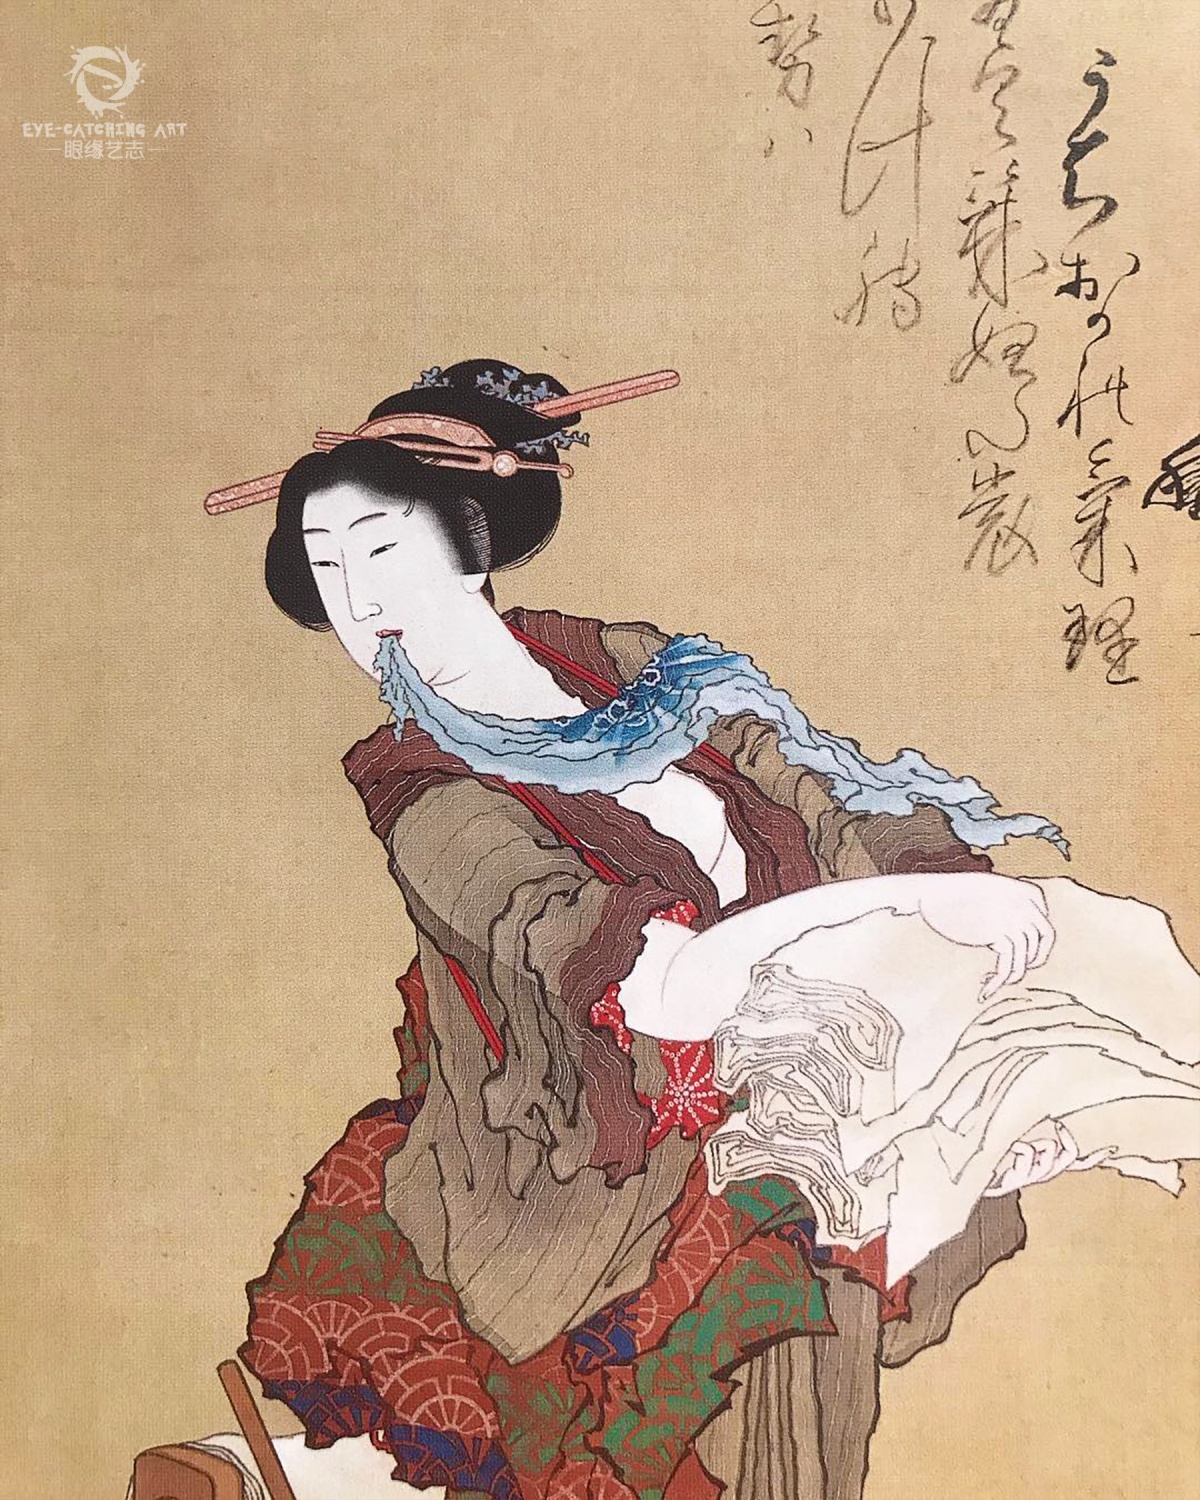 原创大师也难过美人关葛饰北斋与铃木春信的浮世绘美人图